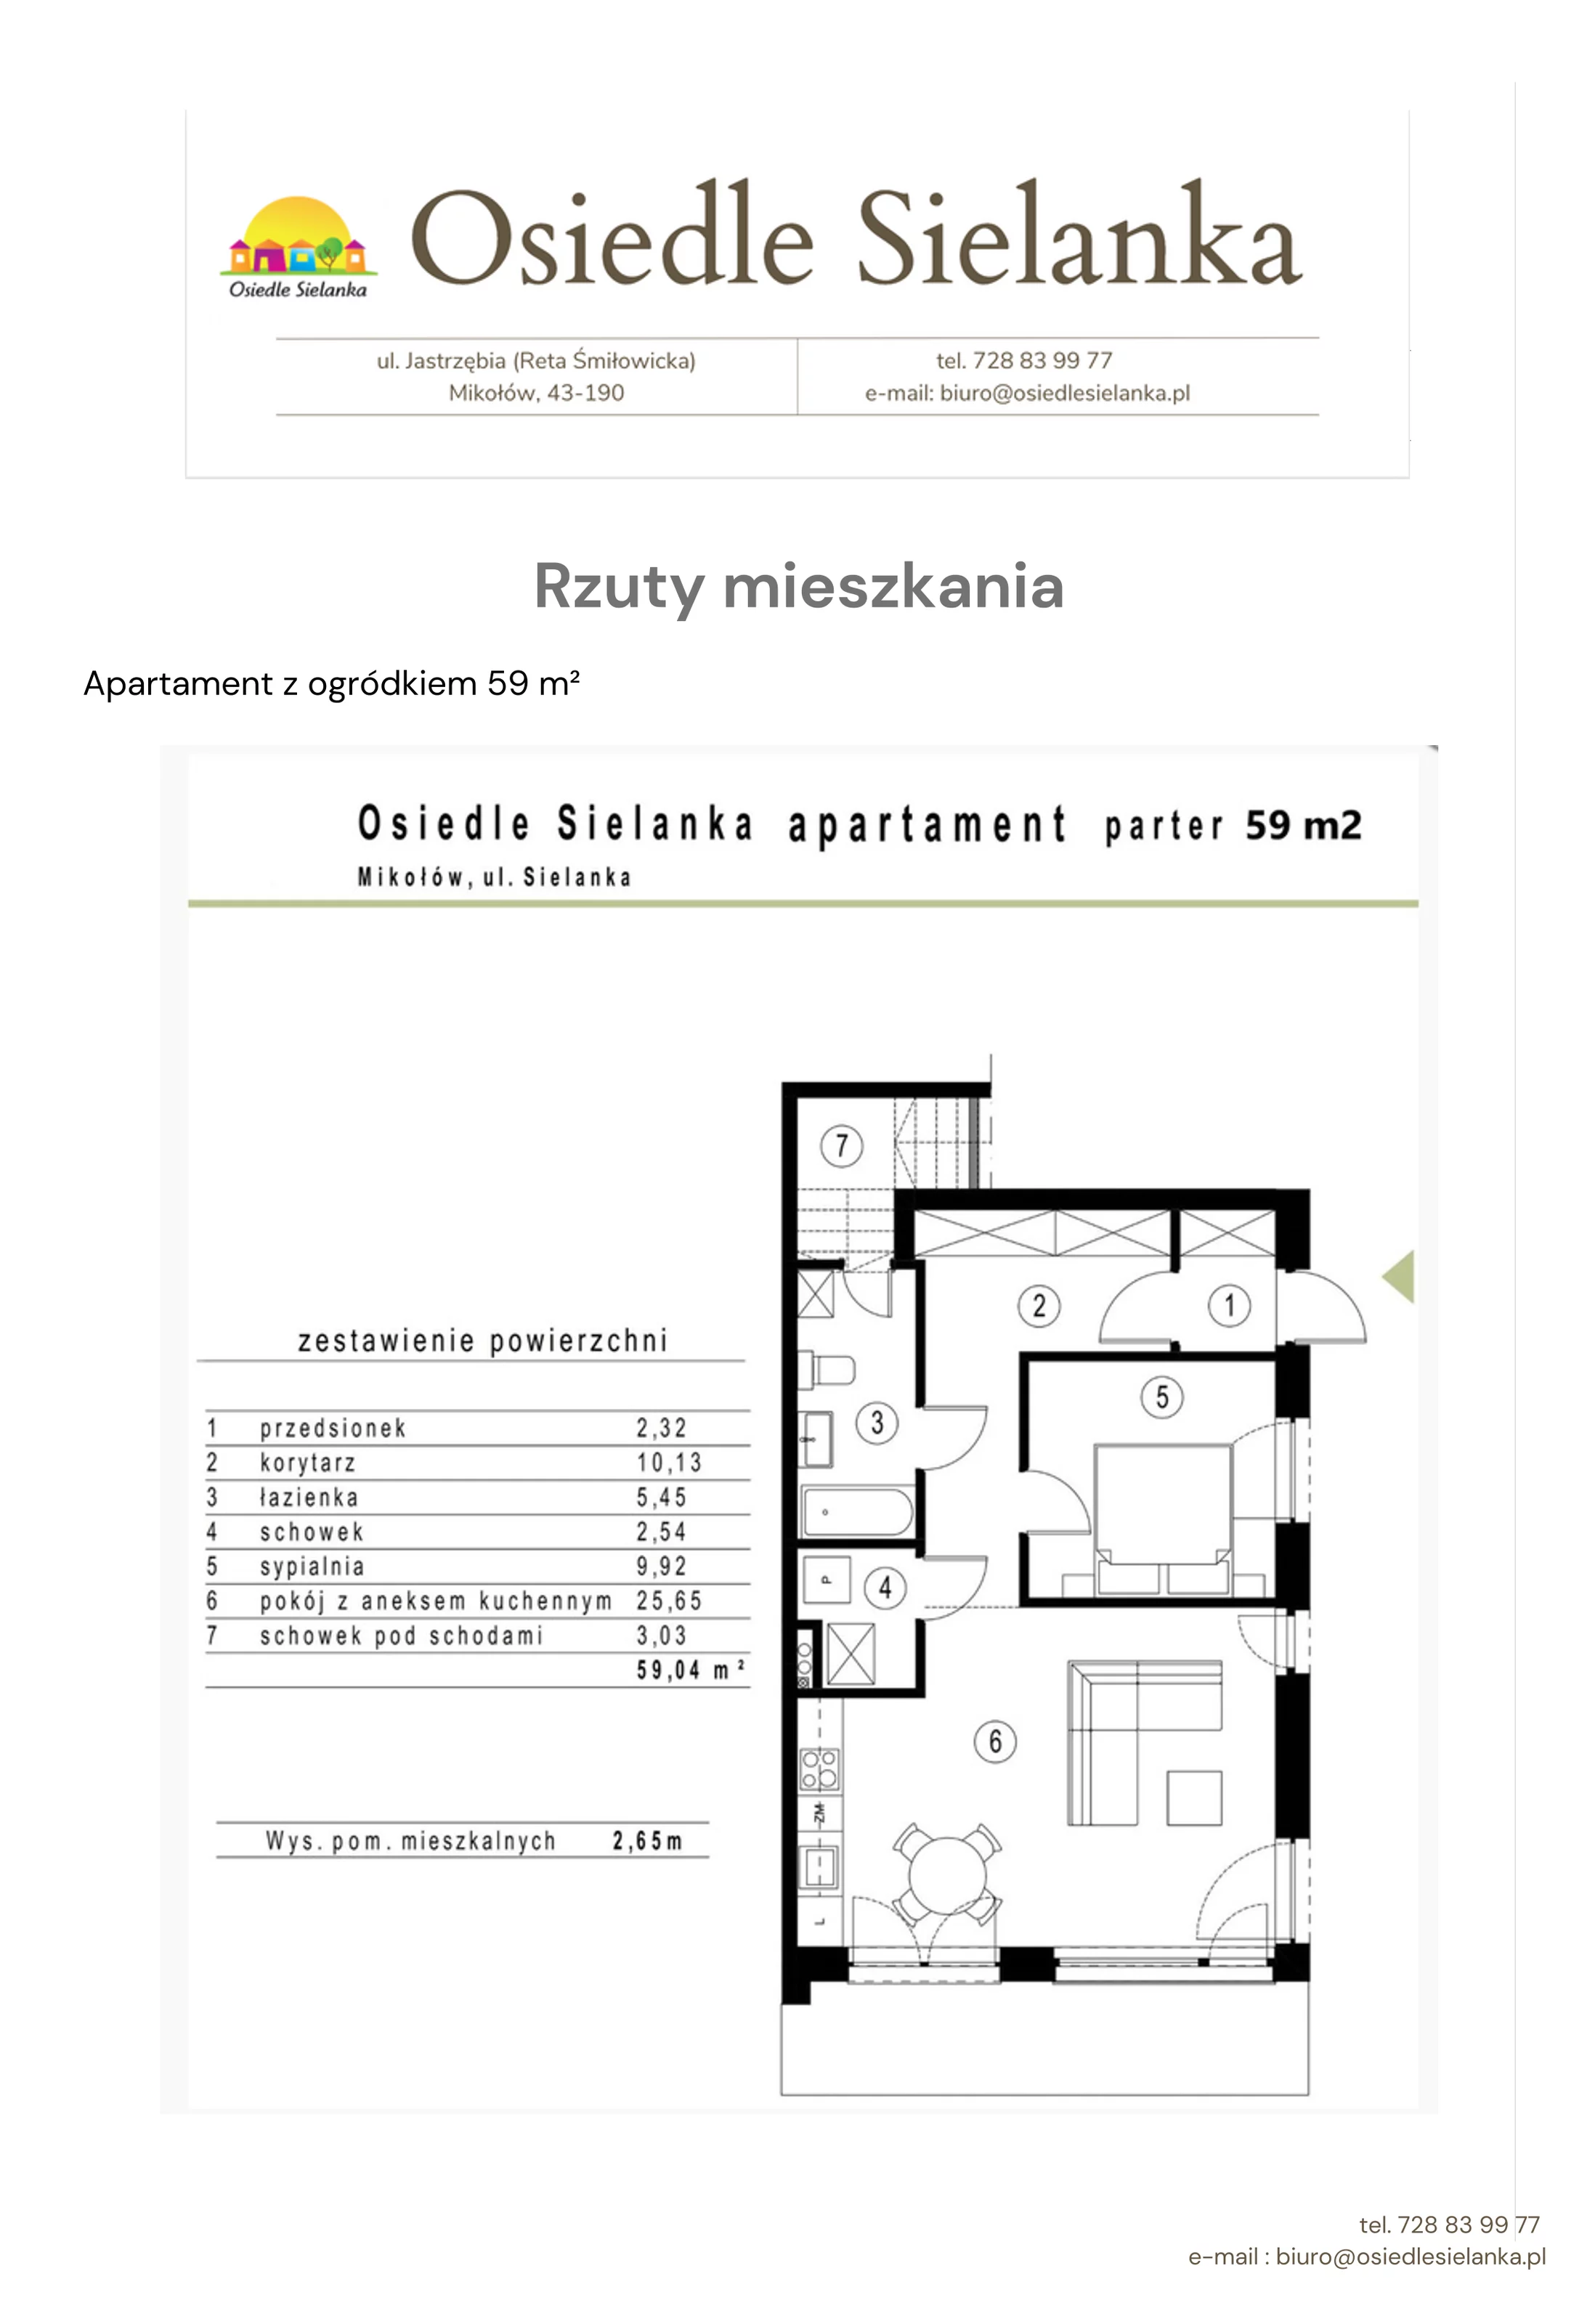 Apartament 59,00 m², parter, oferta nr apartament z ogródkiem 2 pok., Osiedle Sielanka Mikołów, Mikołów, Reta, ul. Jastrzębia